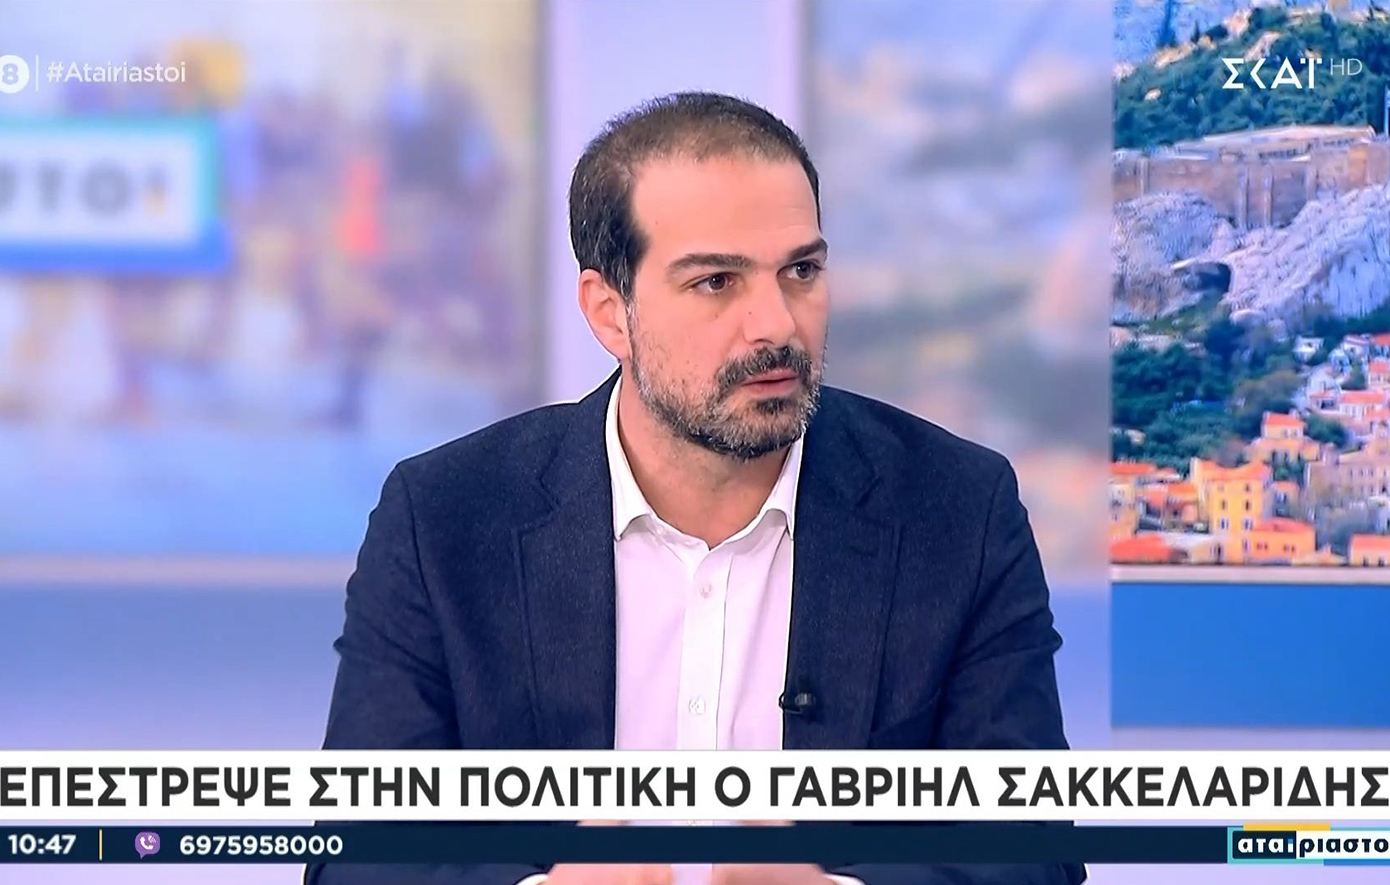 Σακελλαρίδης: Ο ΣΥΡΙΖΑ έχει πάρει μεγάλη απόσταση από την αριστερά